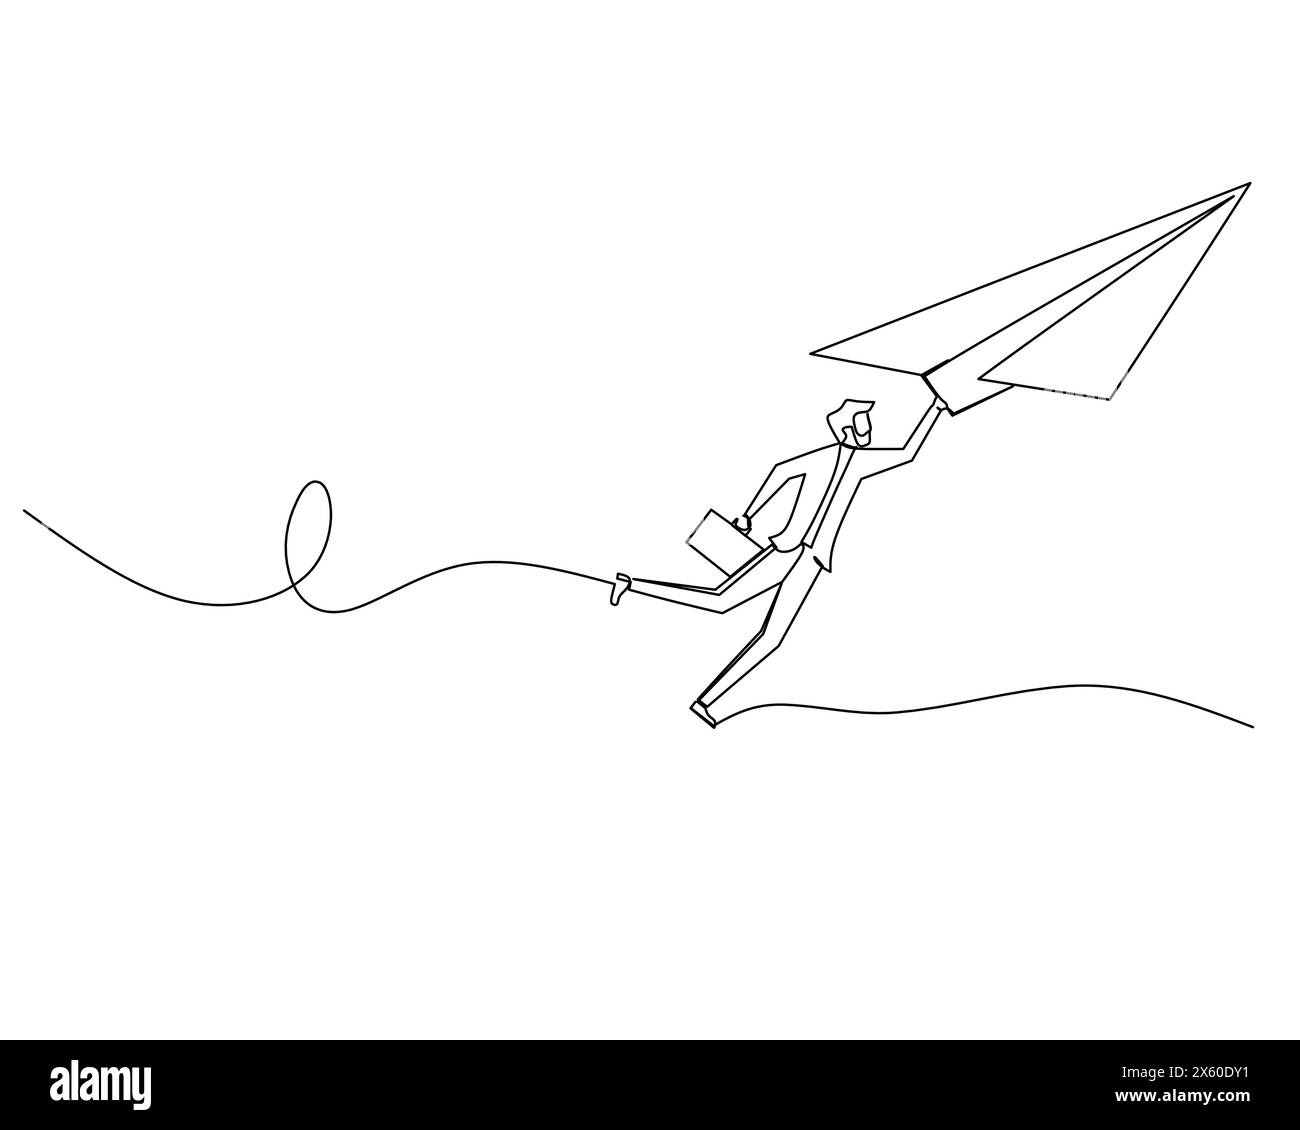 Fortlaufende Einzelzeichnung fliegende Geschäftsmann, der sich an einem Papierflugzeug festhält. Konzept der Unternehmenswachstumsstrategie. Illustration des Konstruktionsvektors Stock Vektor